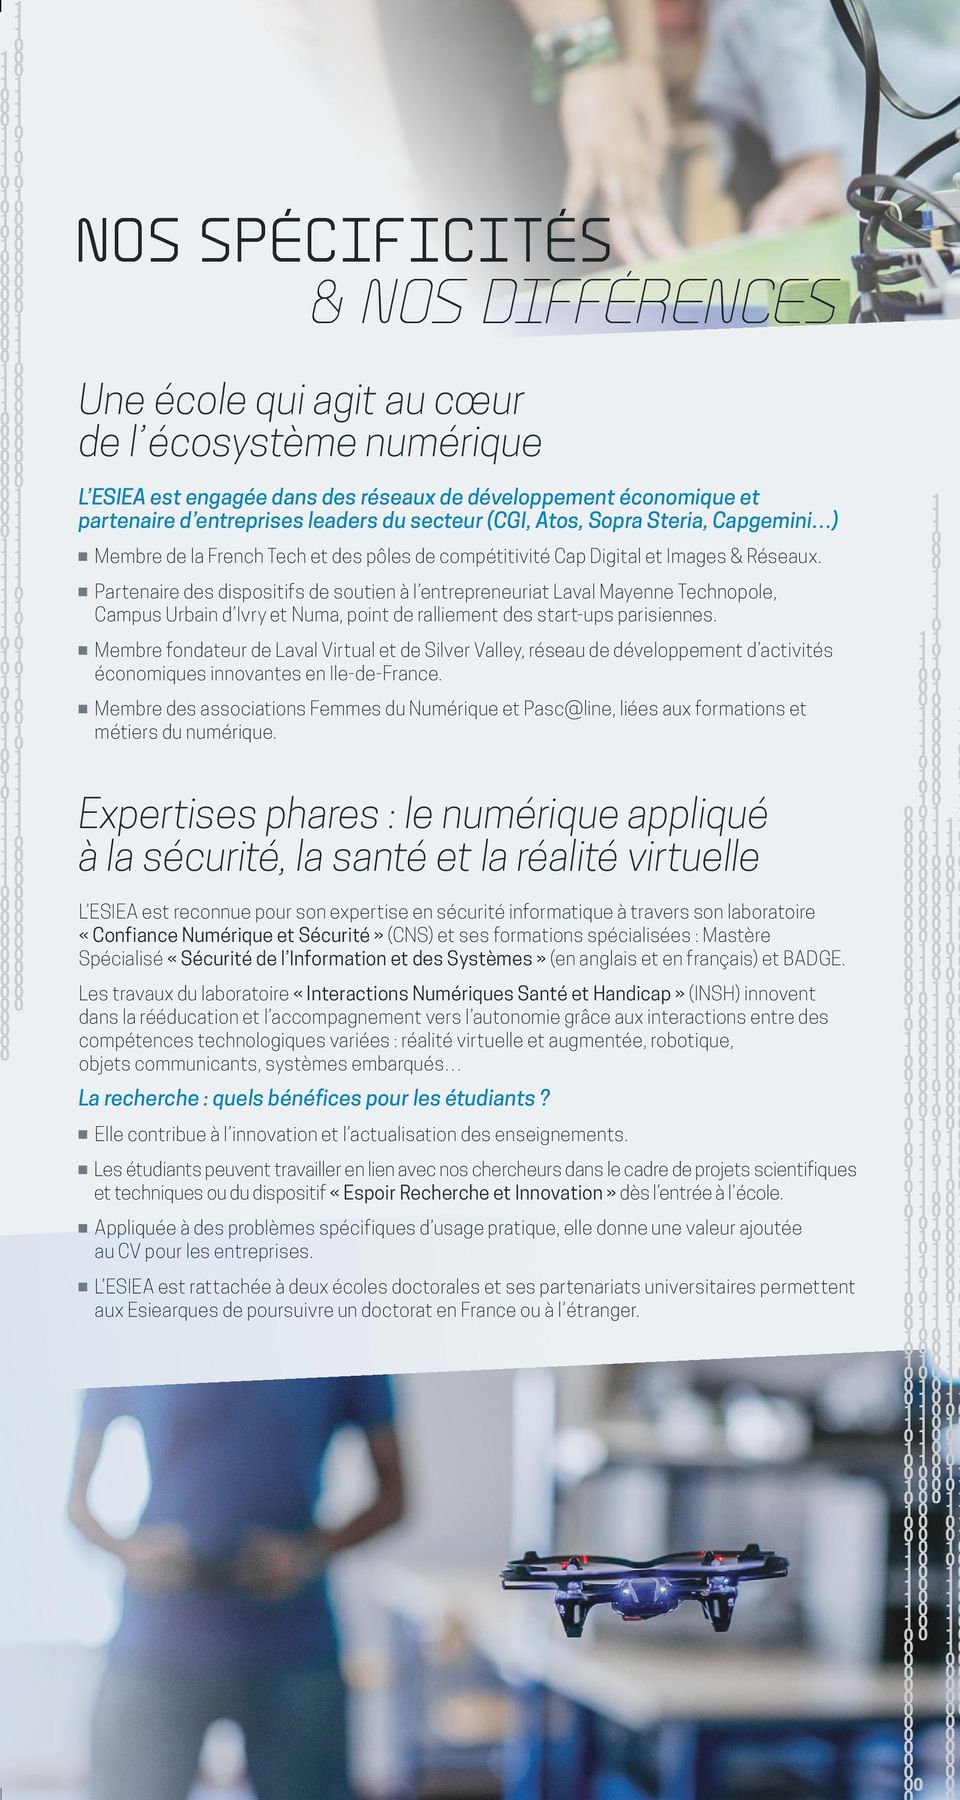 Partenaire des dispositifs de soutien à l entrepreneuriat Laval Mayenne Technopole, Campus Urbain d Ivry et Numa, point de ralliement des start-ups parisiennes.